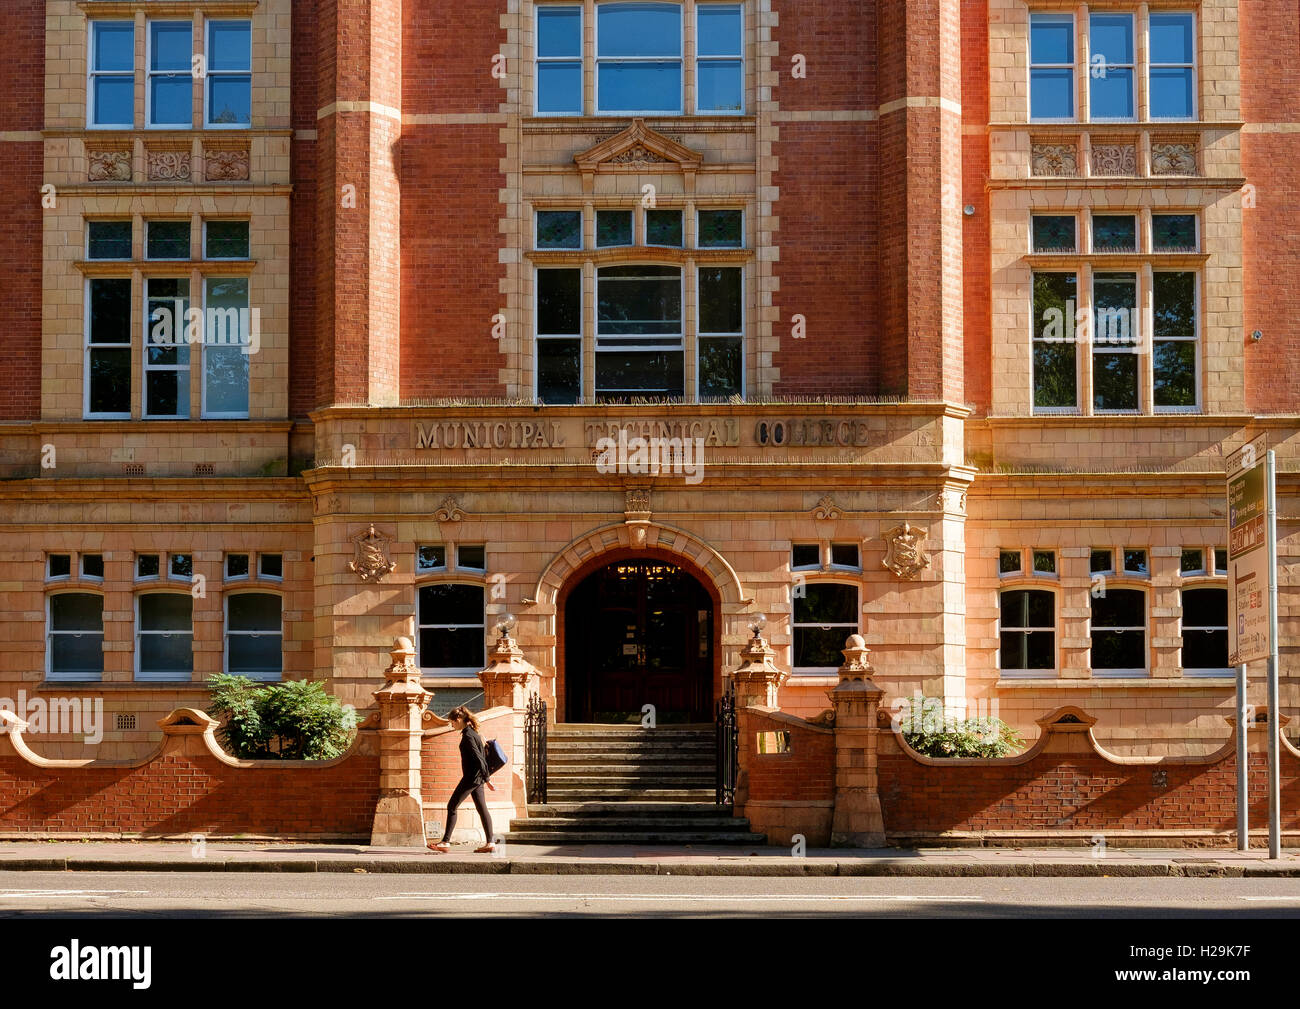 La Jacobiana architettura di stile di quello che era originariamente il Municipal Technical College, ora City College Brighton & Hove. Foto Stock